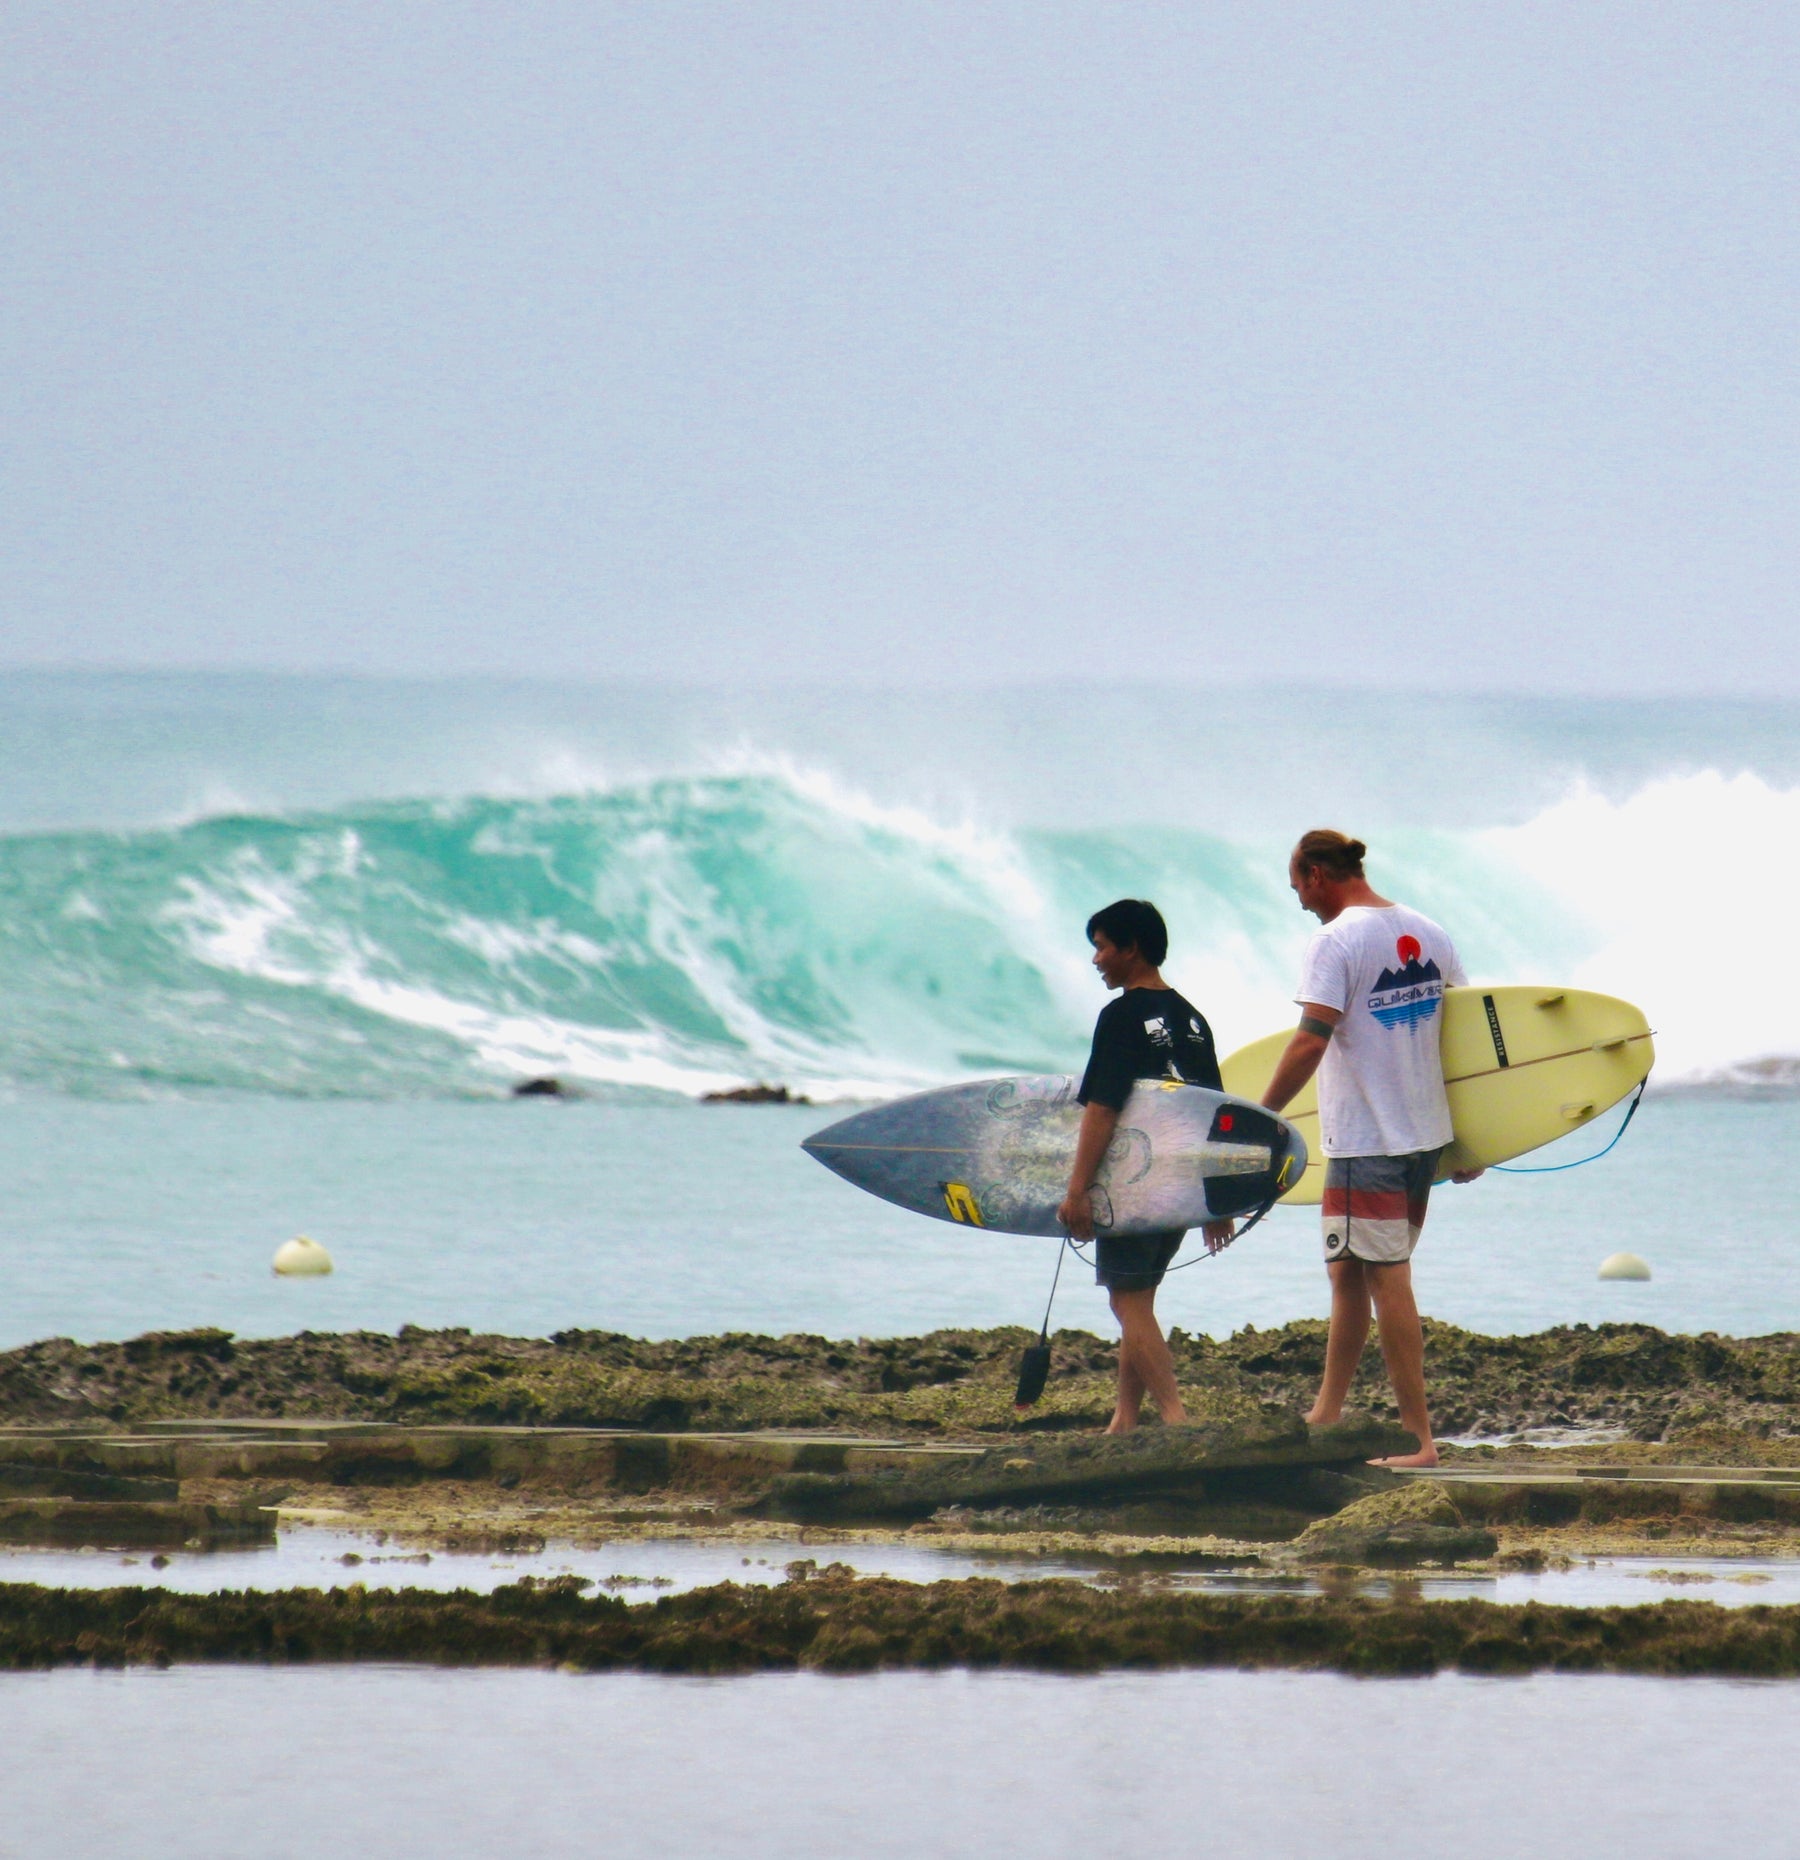 zwei surfer laufen mit surfboards in der hand zum Rifbreak Surfspot. im hintergrund brechen die Wellen des Meeres